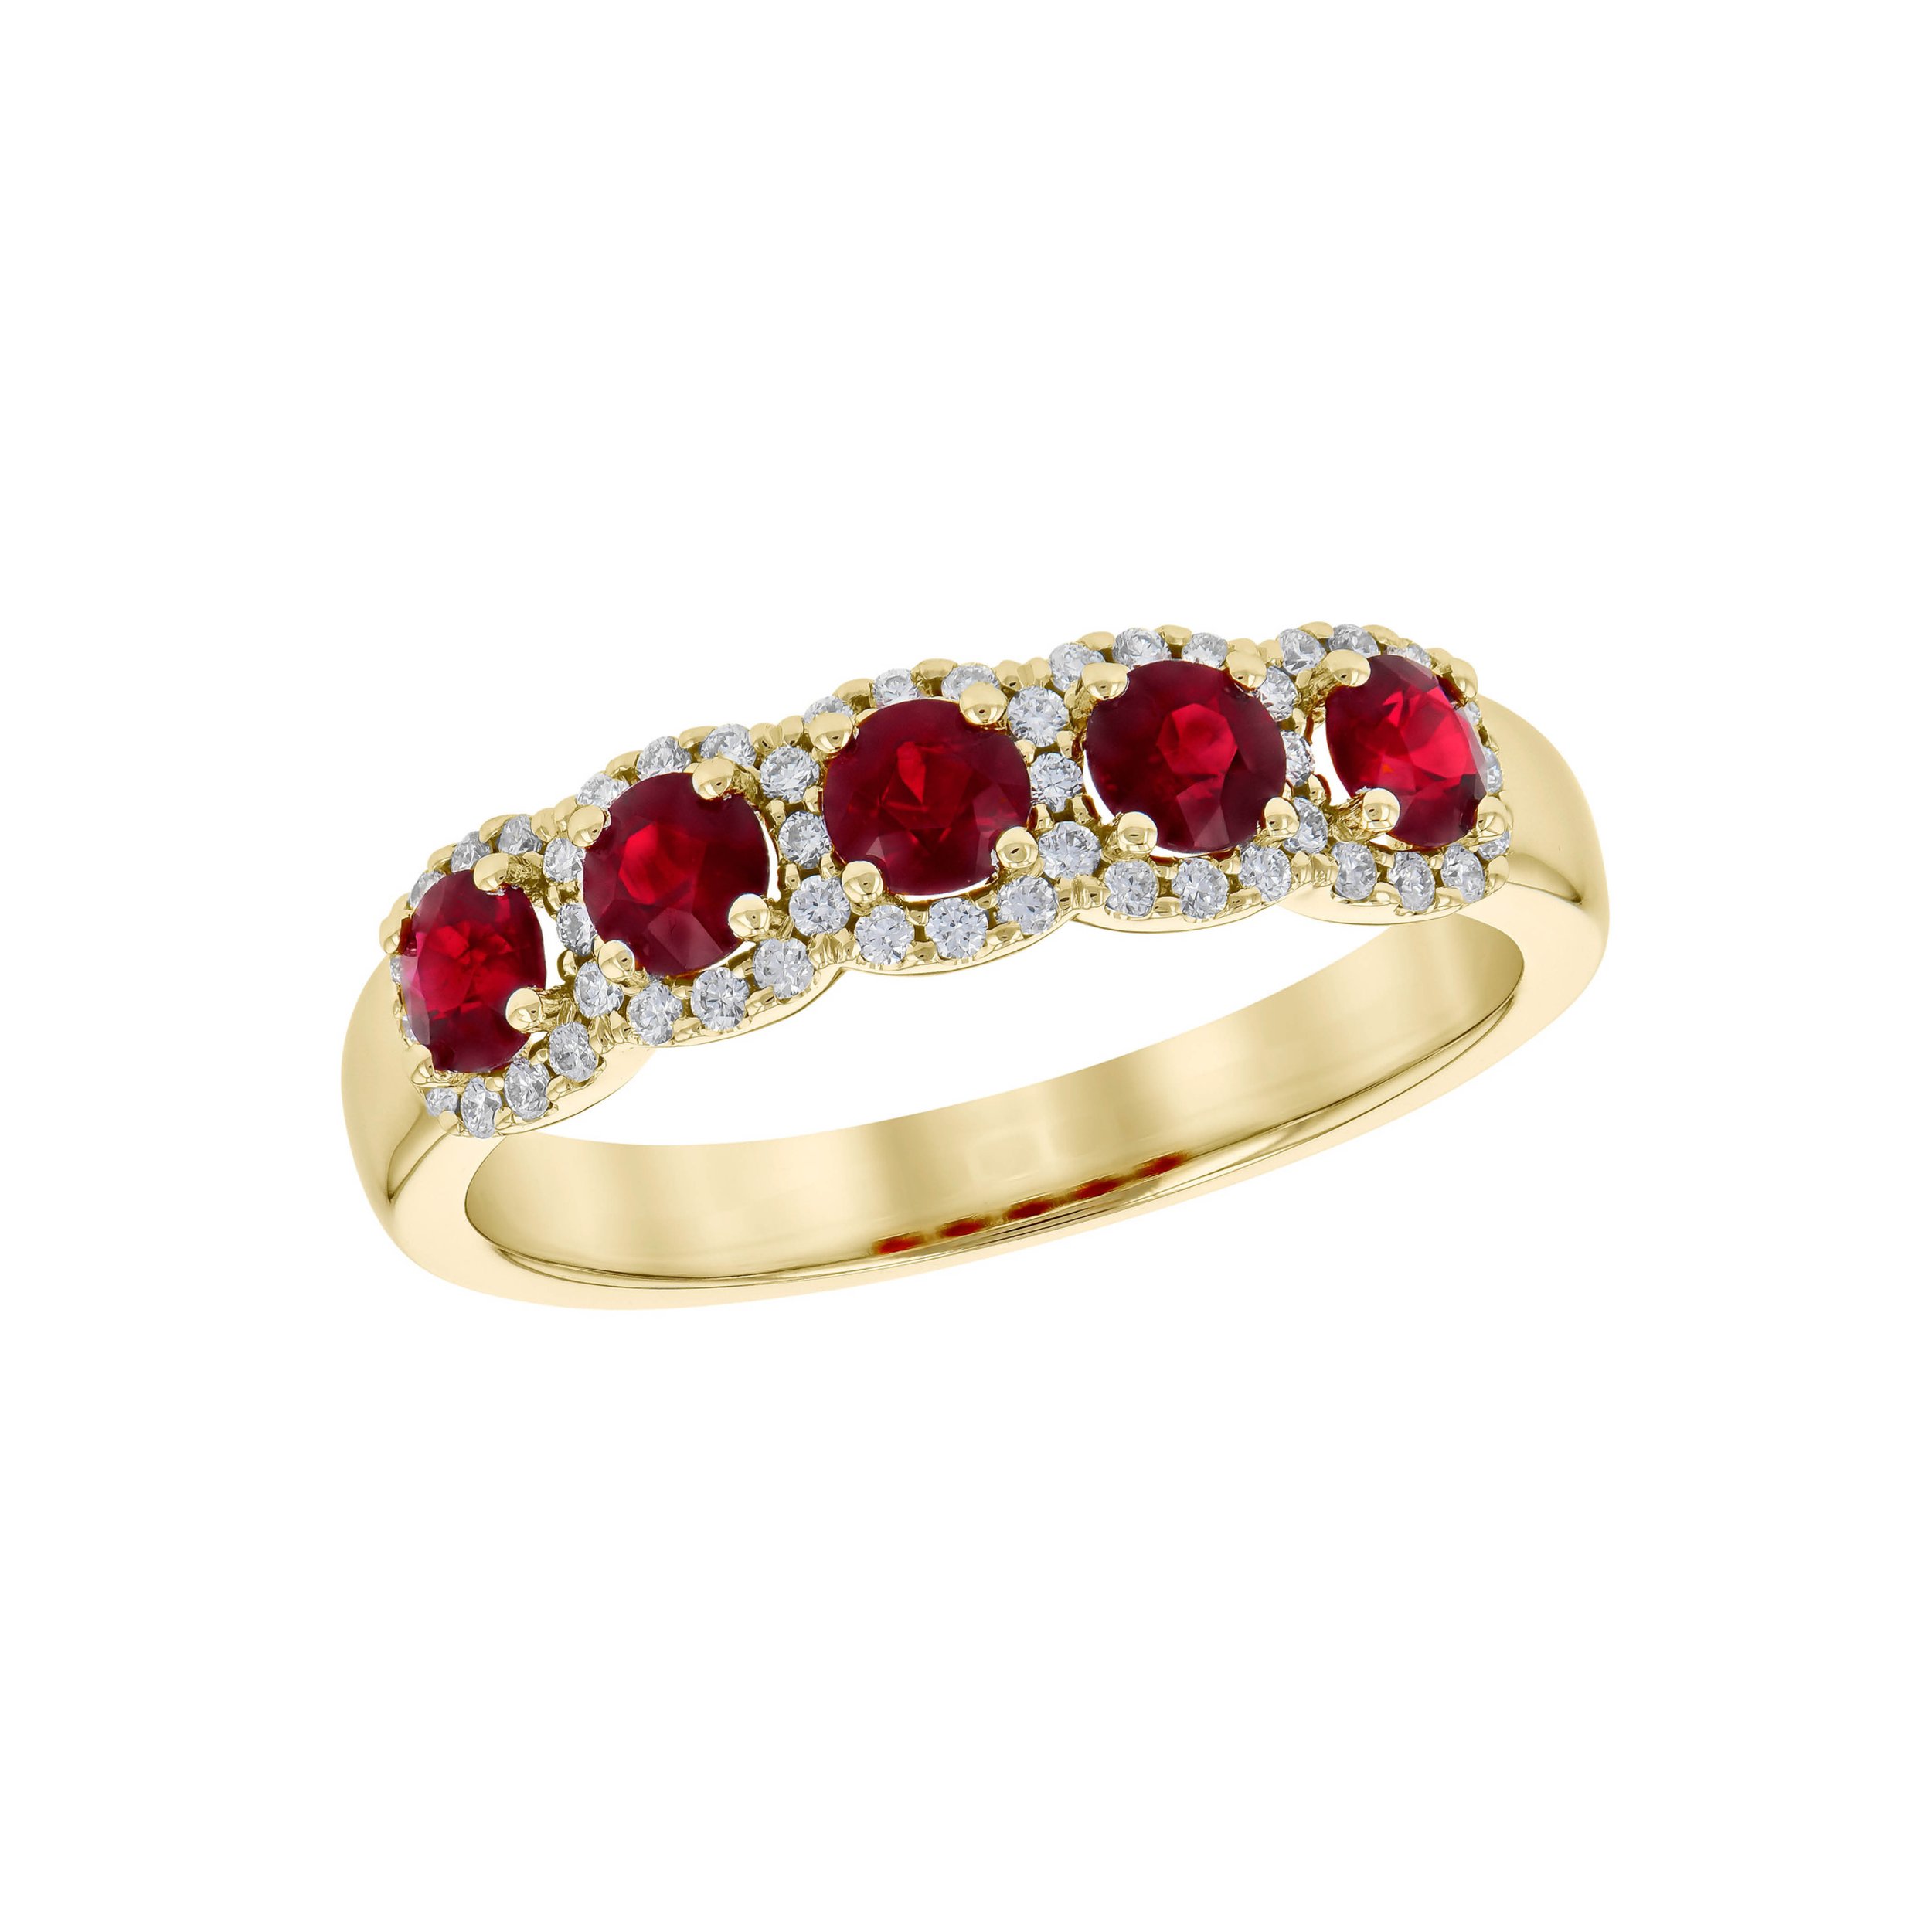 Colored Gemstone Jewelry N-Z — Leonard Jewelry